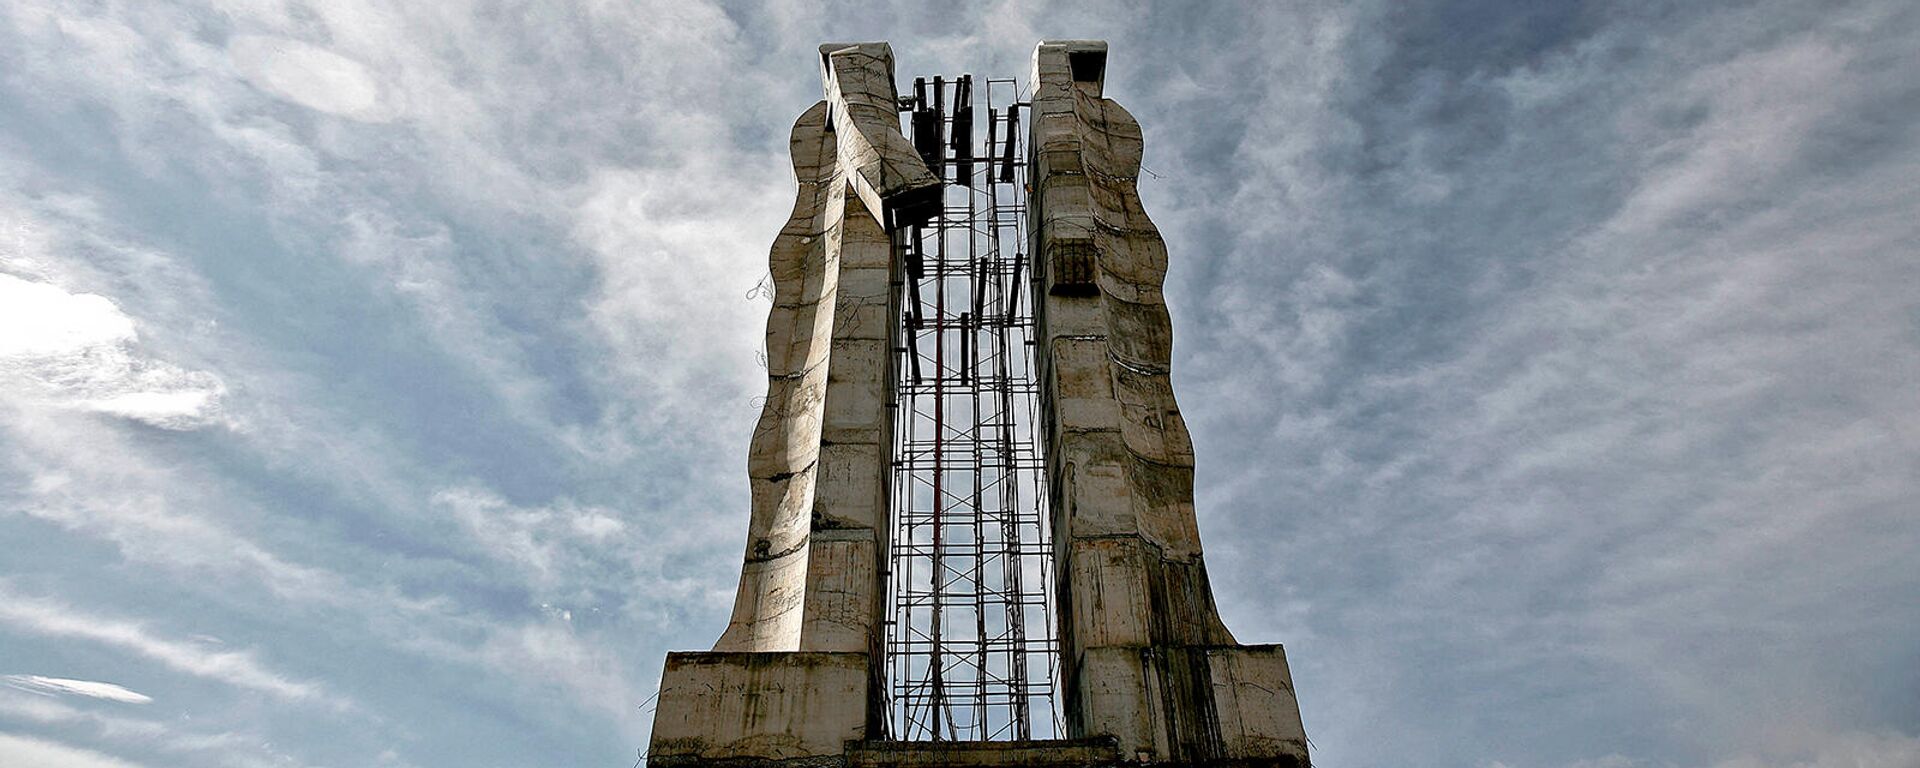 Работа турецкого скульптора Мехмета Аксоя Скульптура человечества (Карс), созданная для содействия примирению между Турцией и Арменией - Sputnik Армения, 1920, 18.12.2021